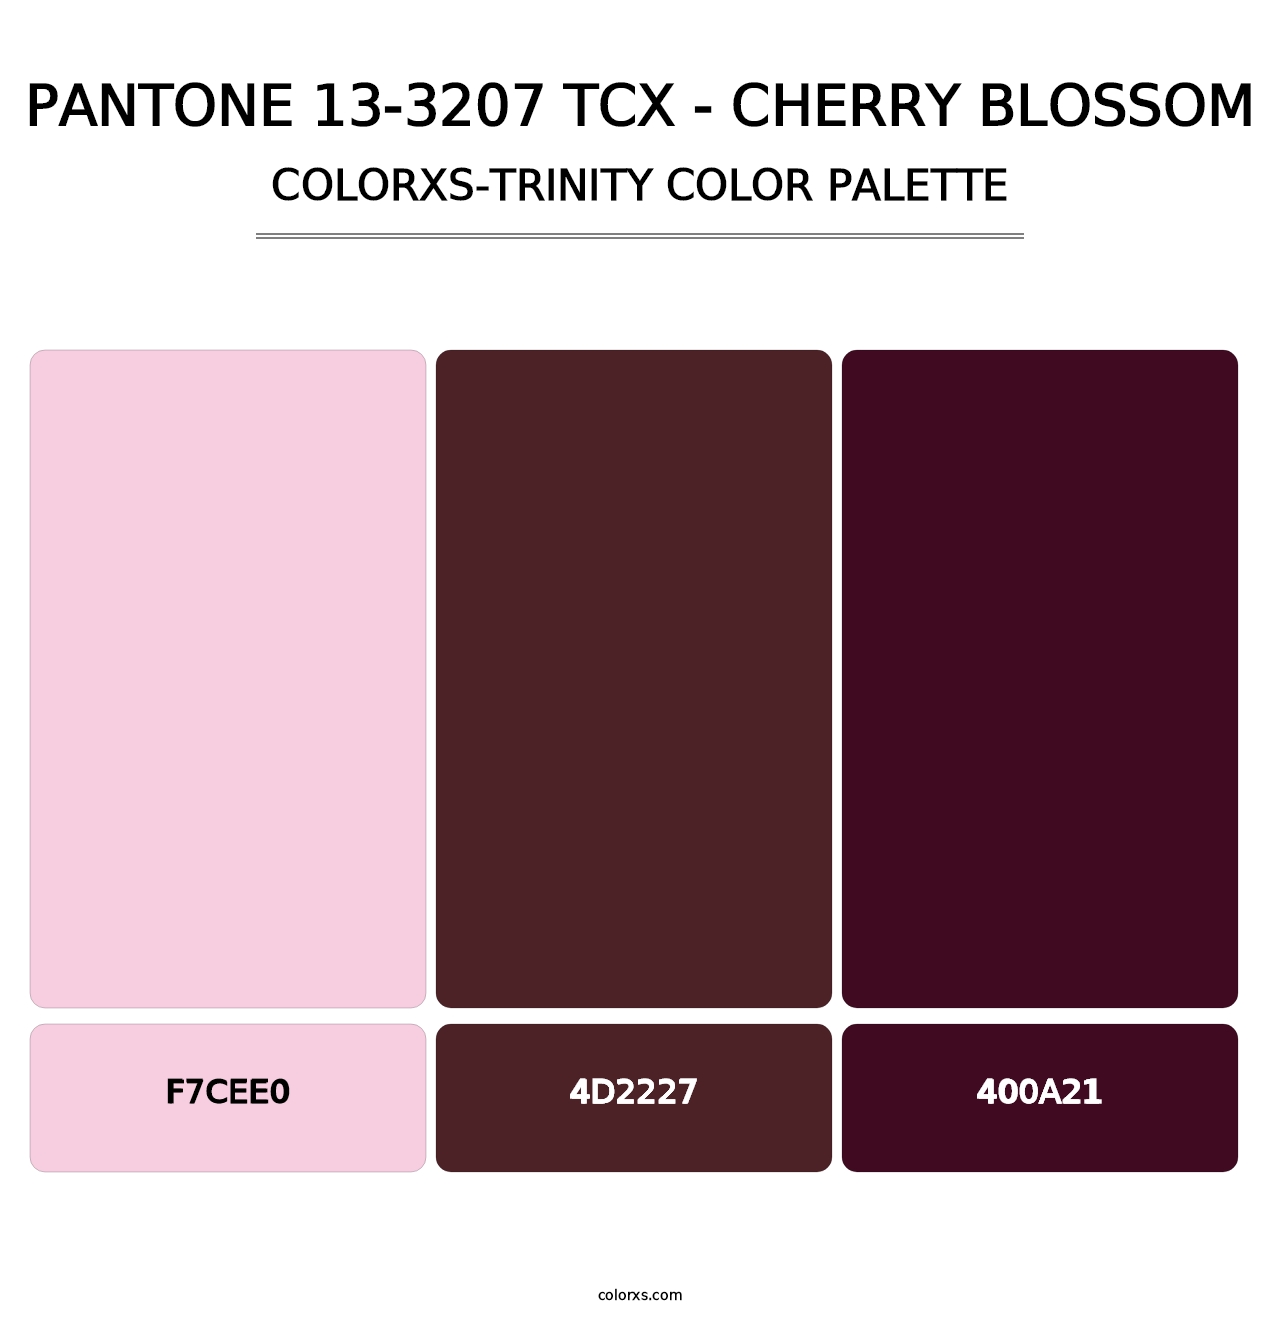 PANTONE 13-3207 TCX - Cherry Blossom - Colorxs Trinity Palette